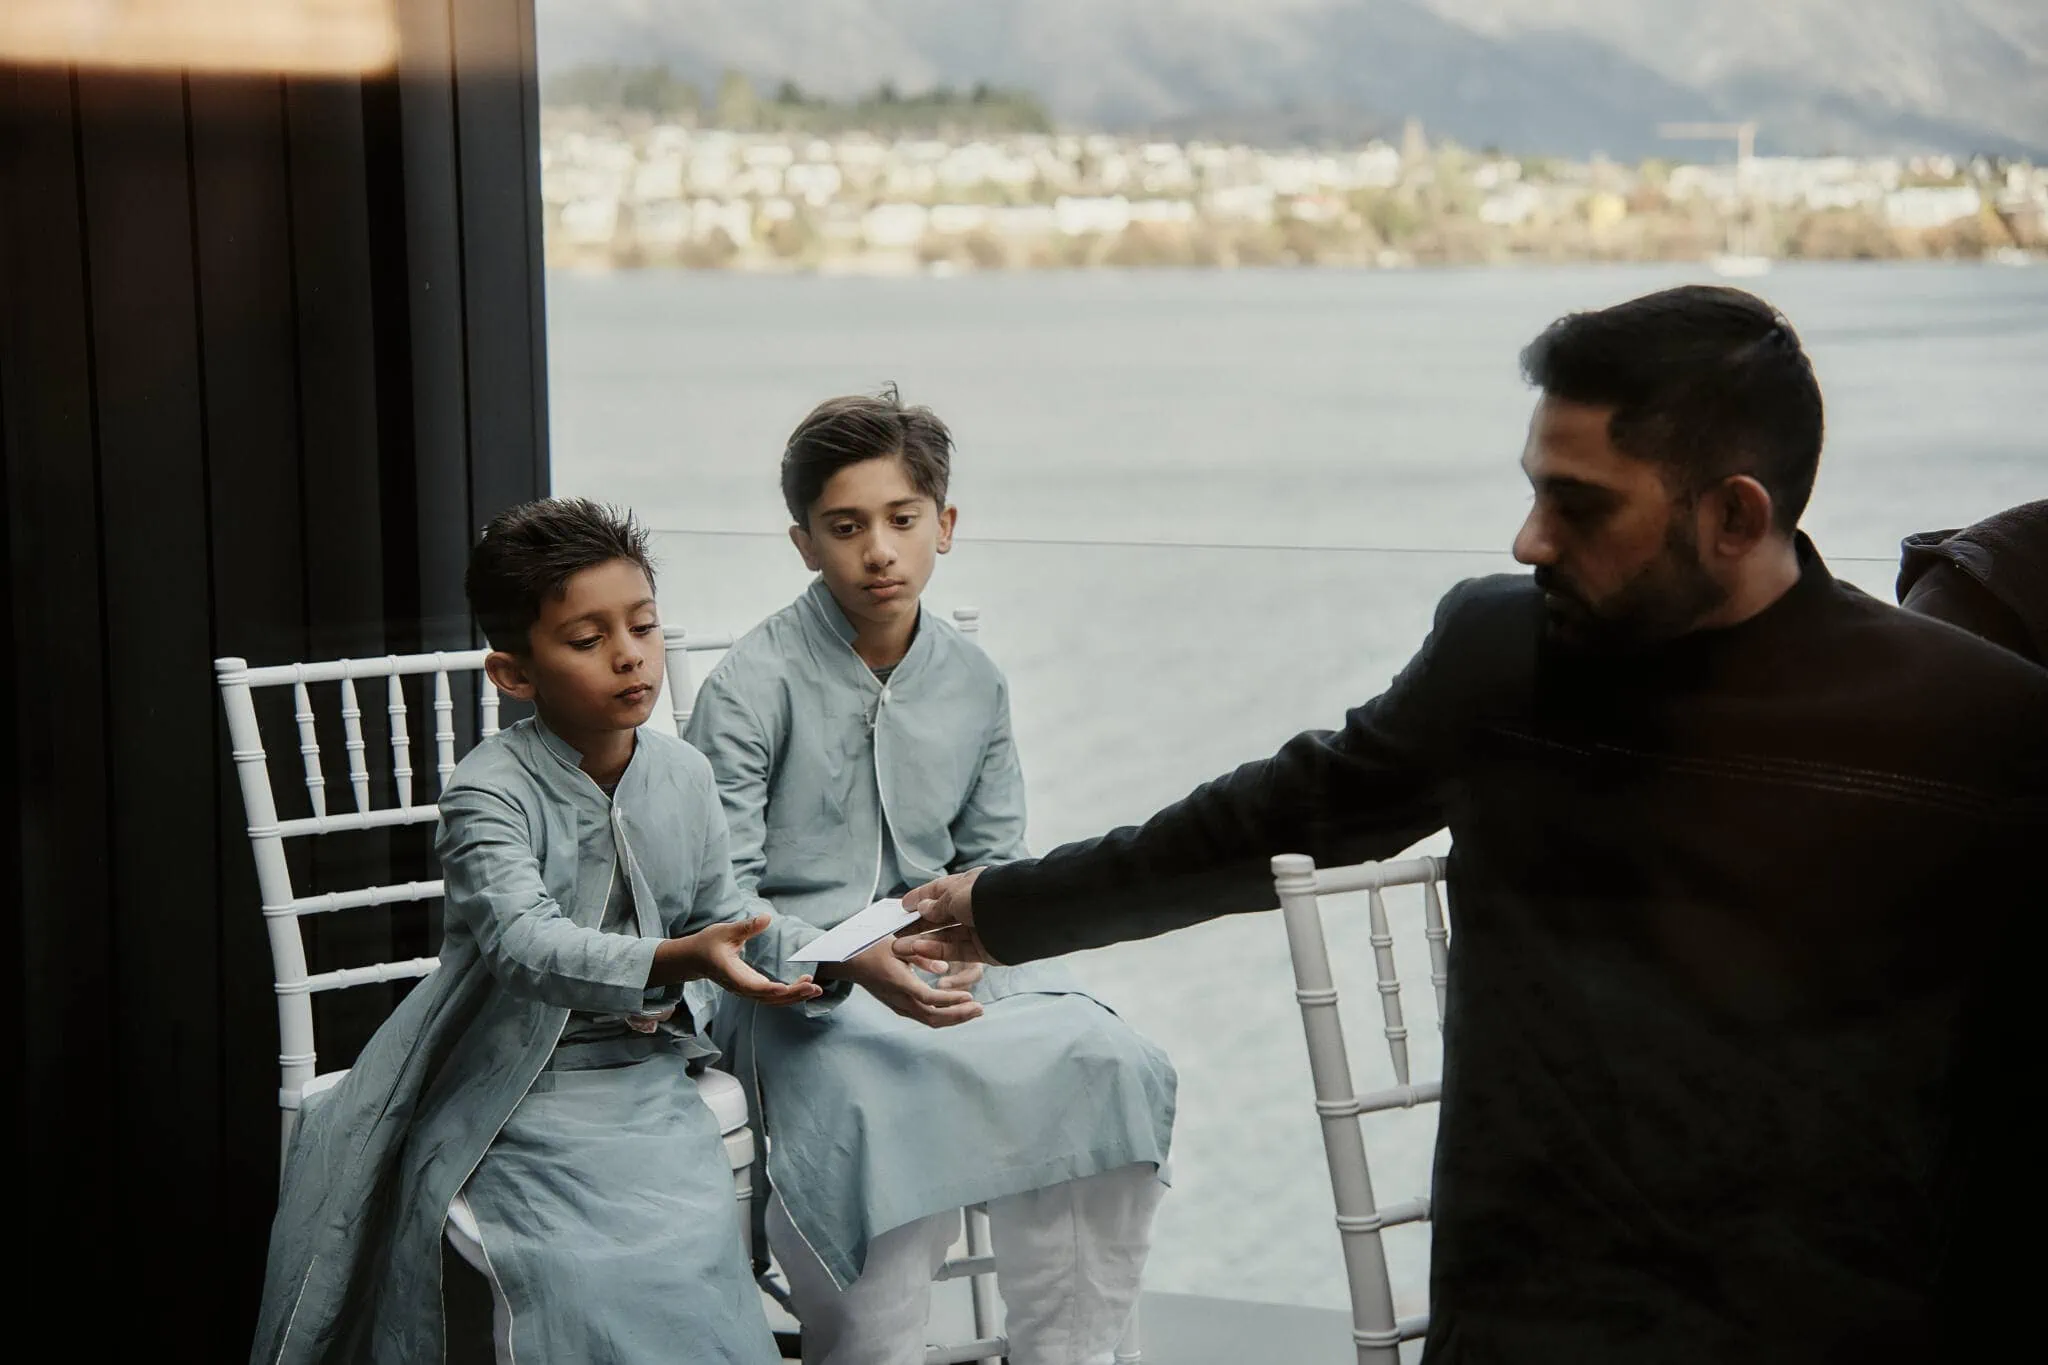 Queenstown New Zealand Elopement Wedding Photographer - A man in a blue kurta handing a boy a gift at Wasim and Yumn's Queenstown Islamic wedding.